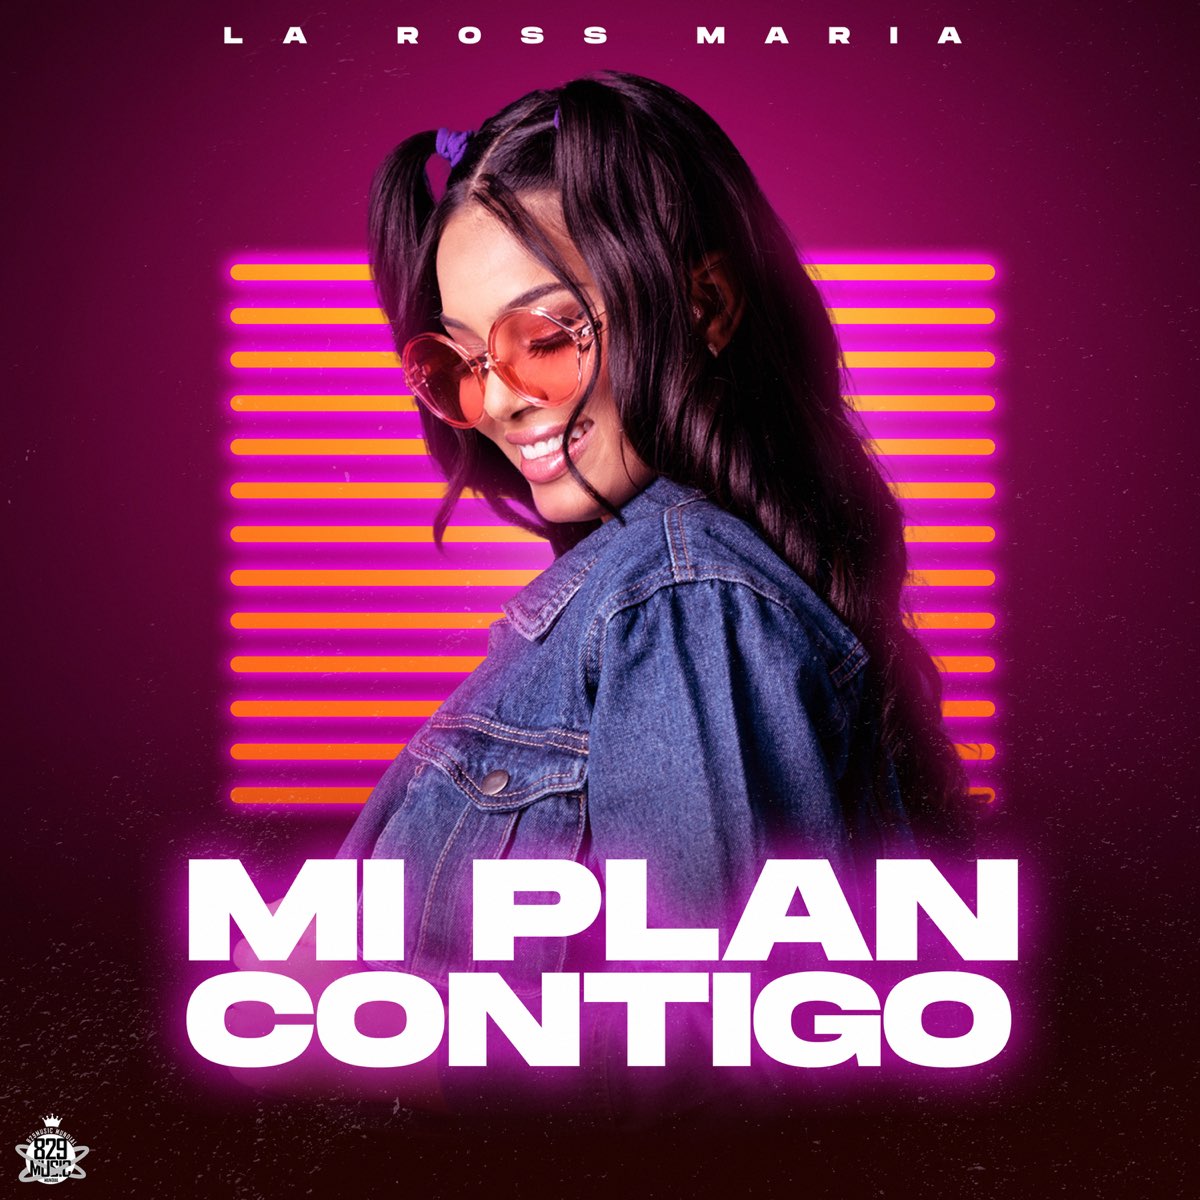 Mi Plan Contigo - Single by La Ross Maria on Apple Music